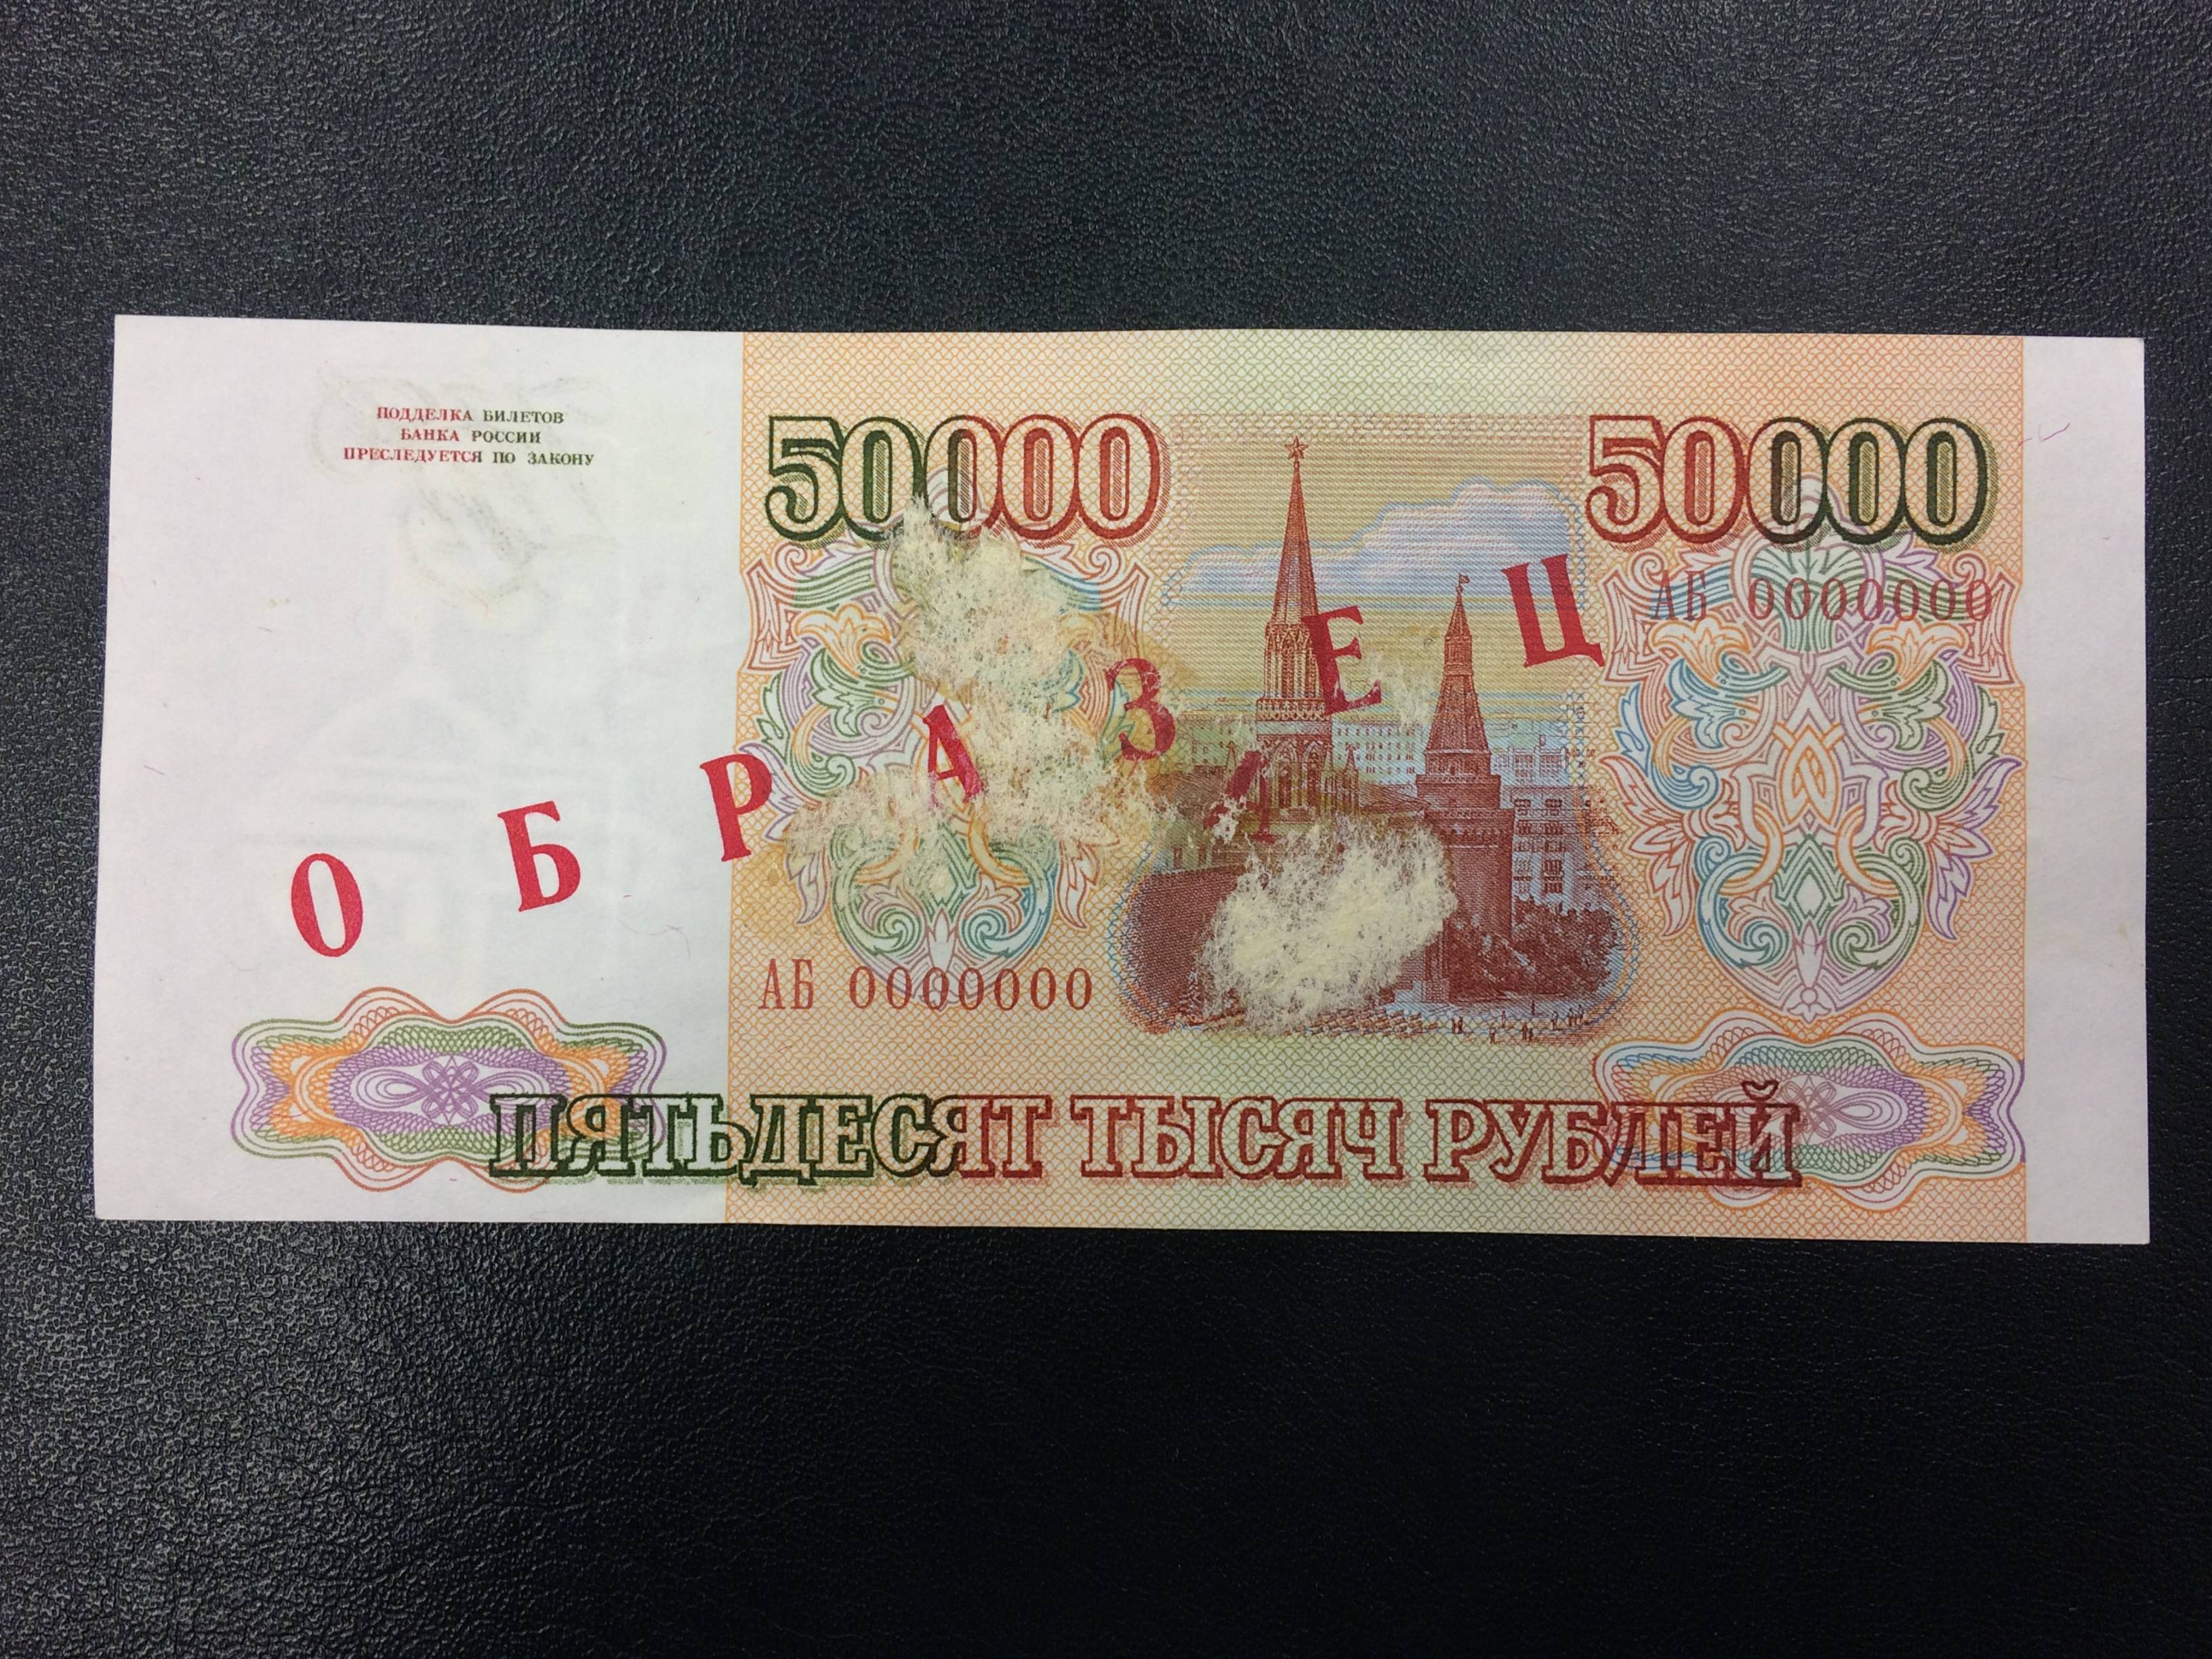 Топ 12 банков: кредит 50000 рублей без справок срочно